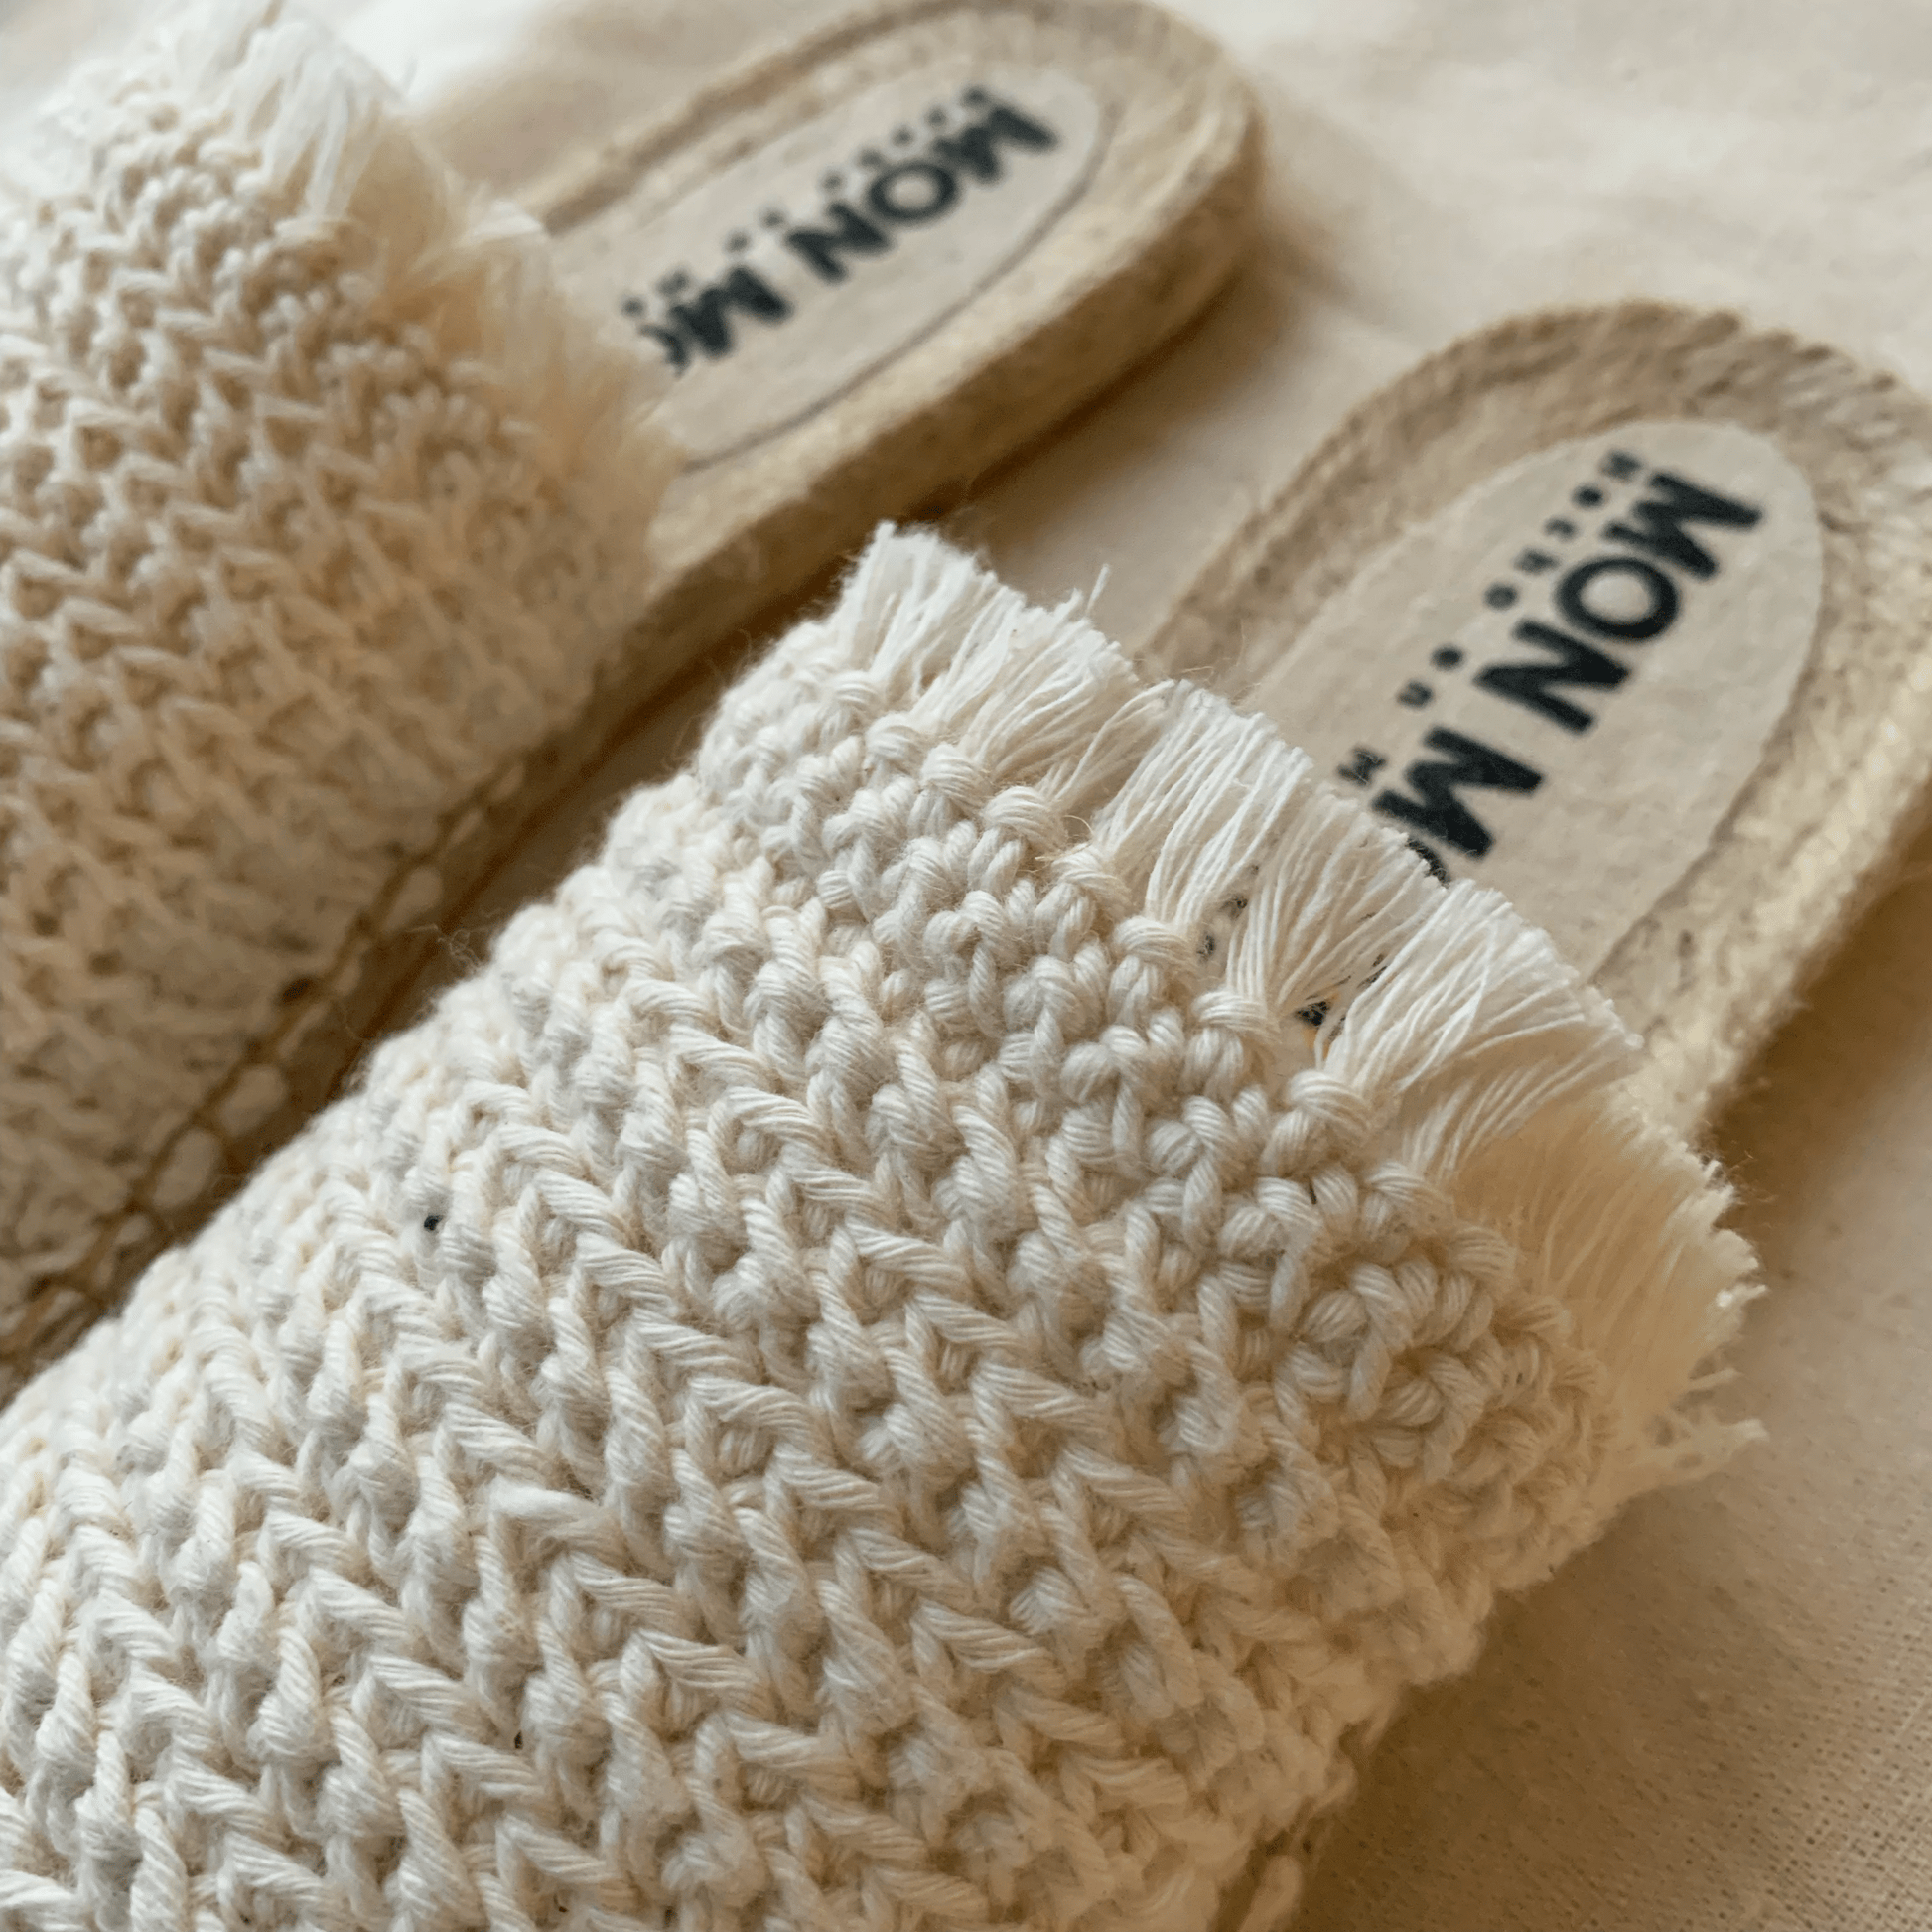 Sandalia Crochet Crudo - Mon Mon Calzado